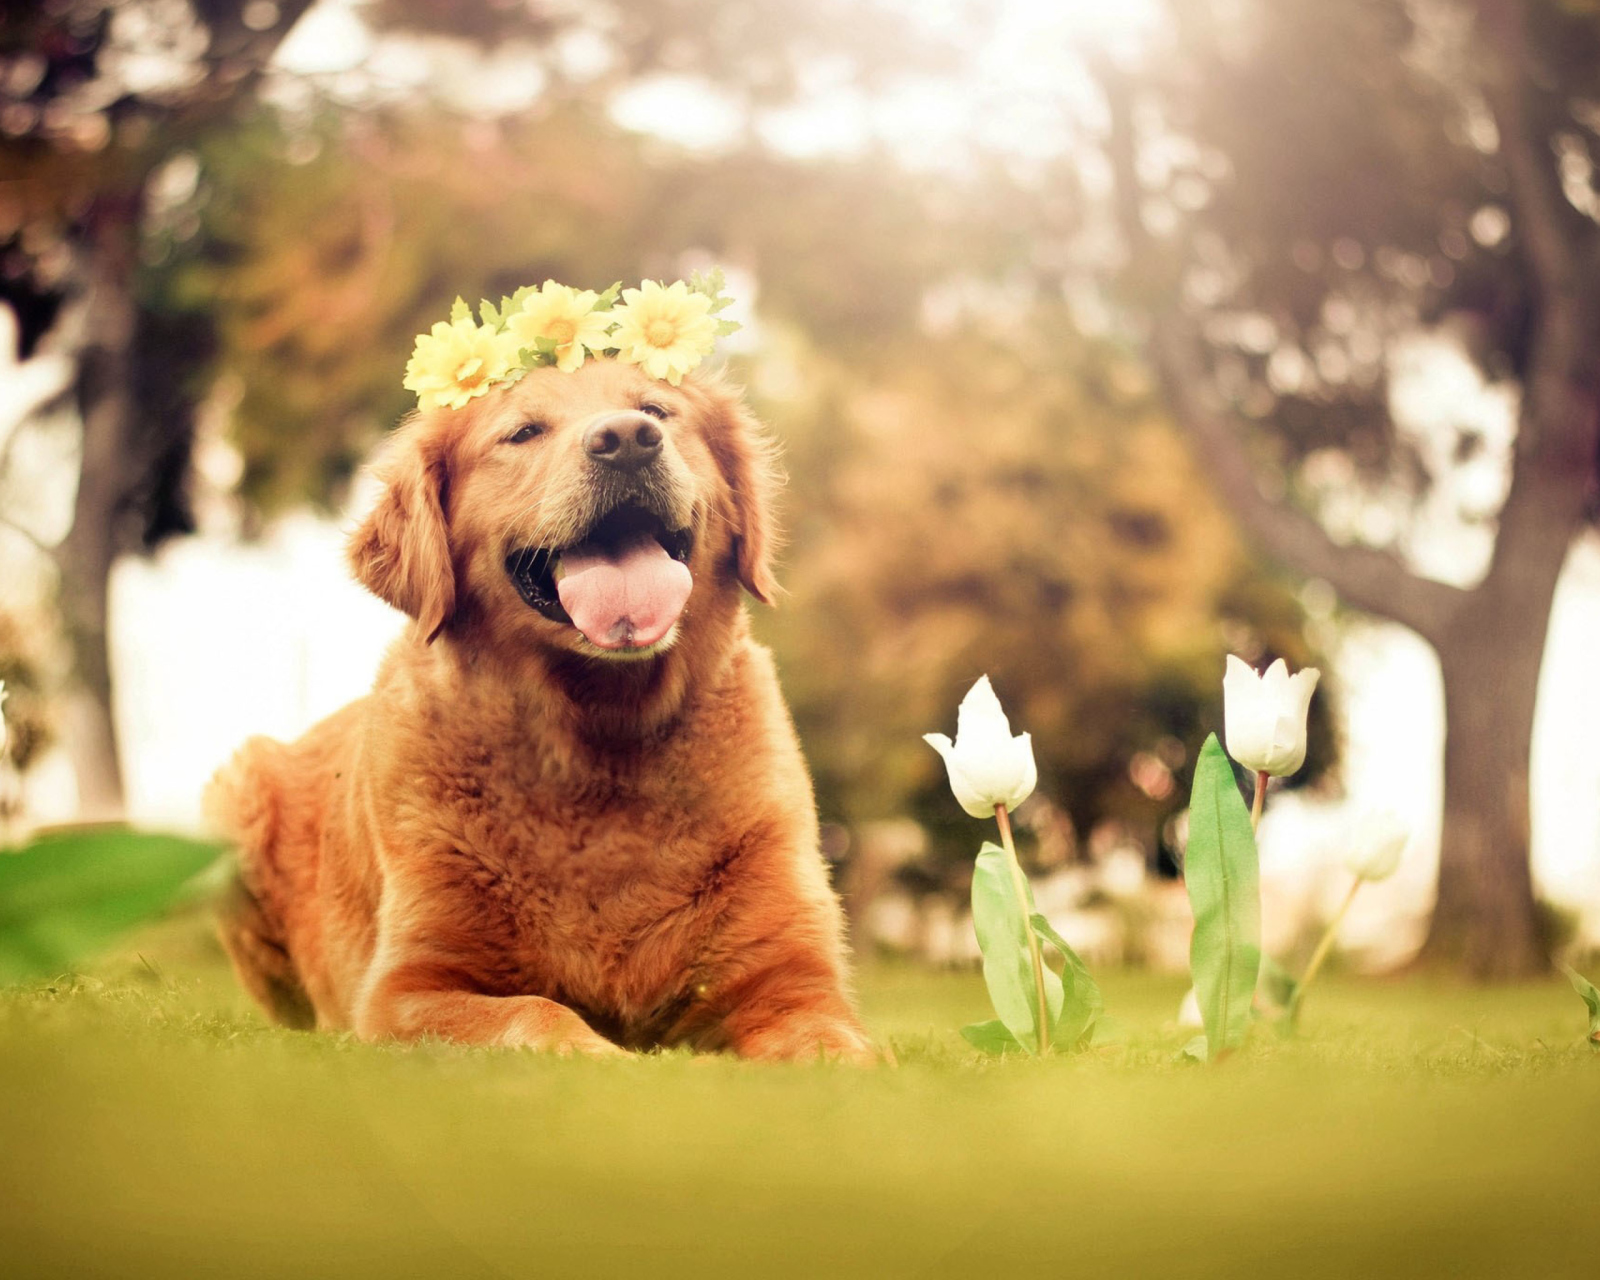 Обои Ginger Dog With Flower Wreath 1600x1280